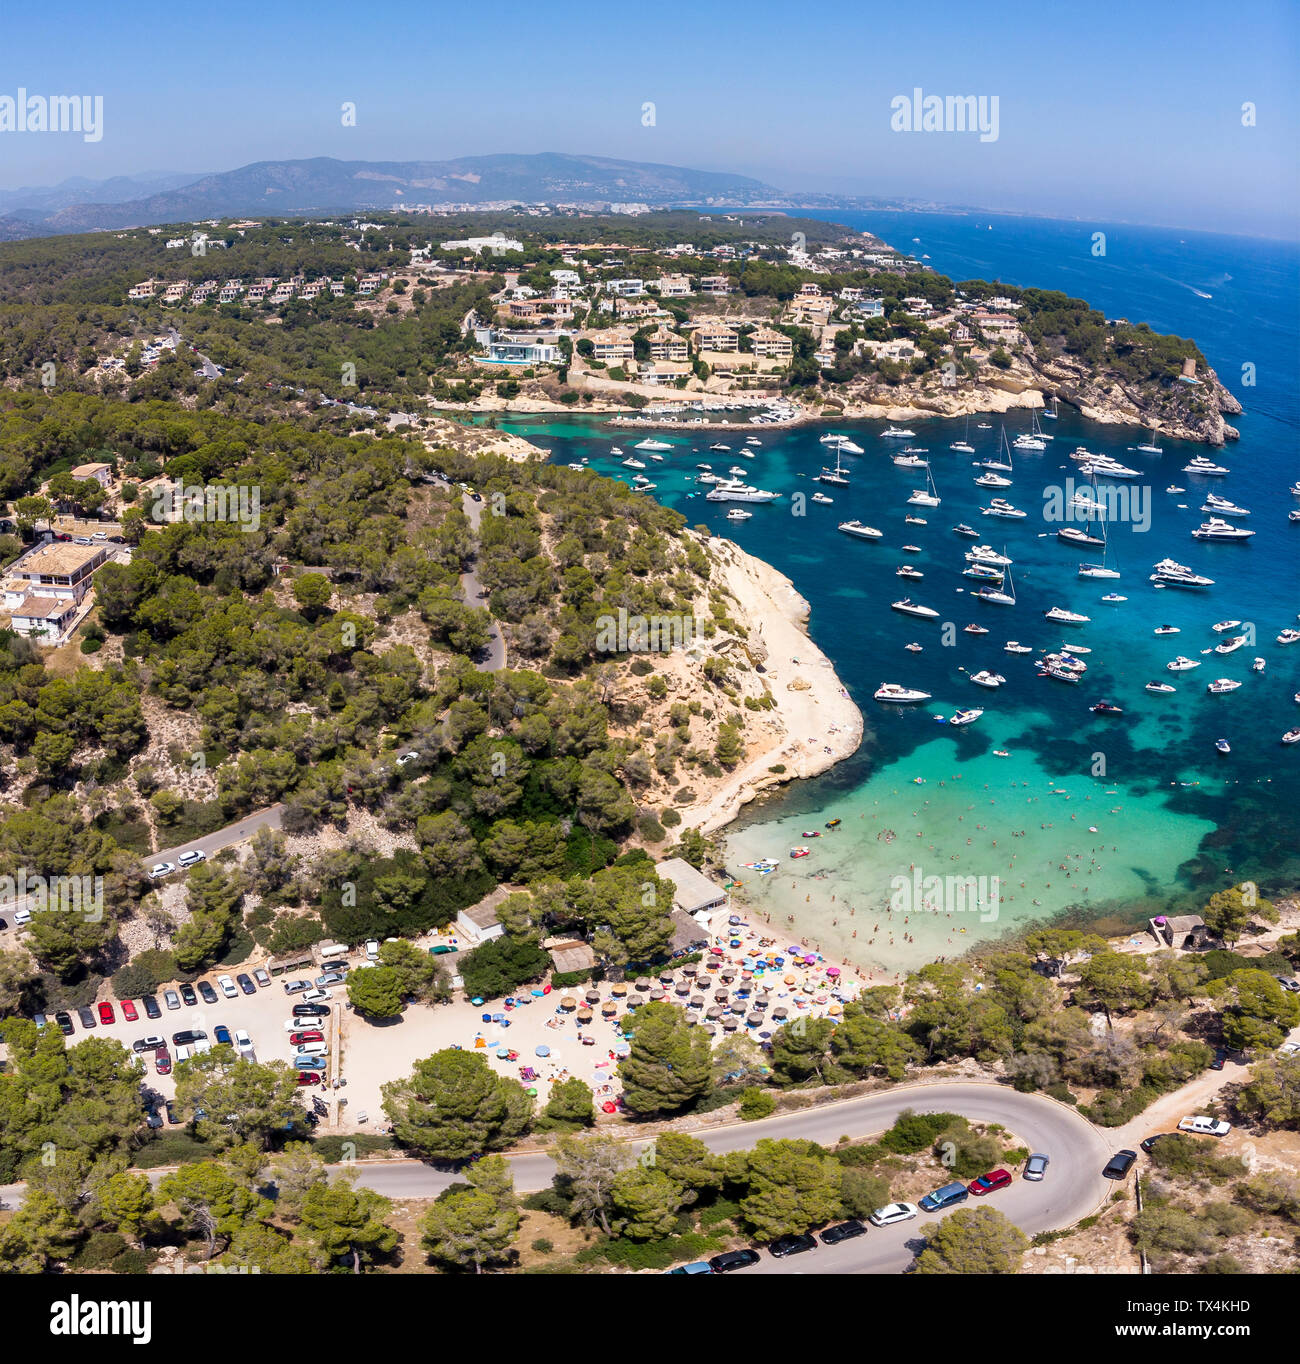 Espagne, Majorque, Palma de Mallorca, vue aérienne de la région et d'El Toro, Calvia Portals Vells Banque D'Images